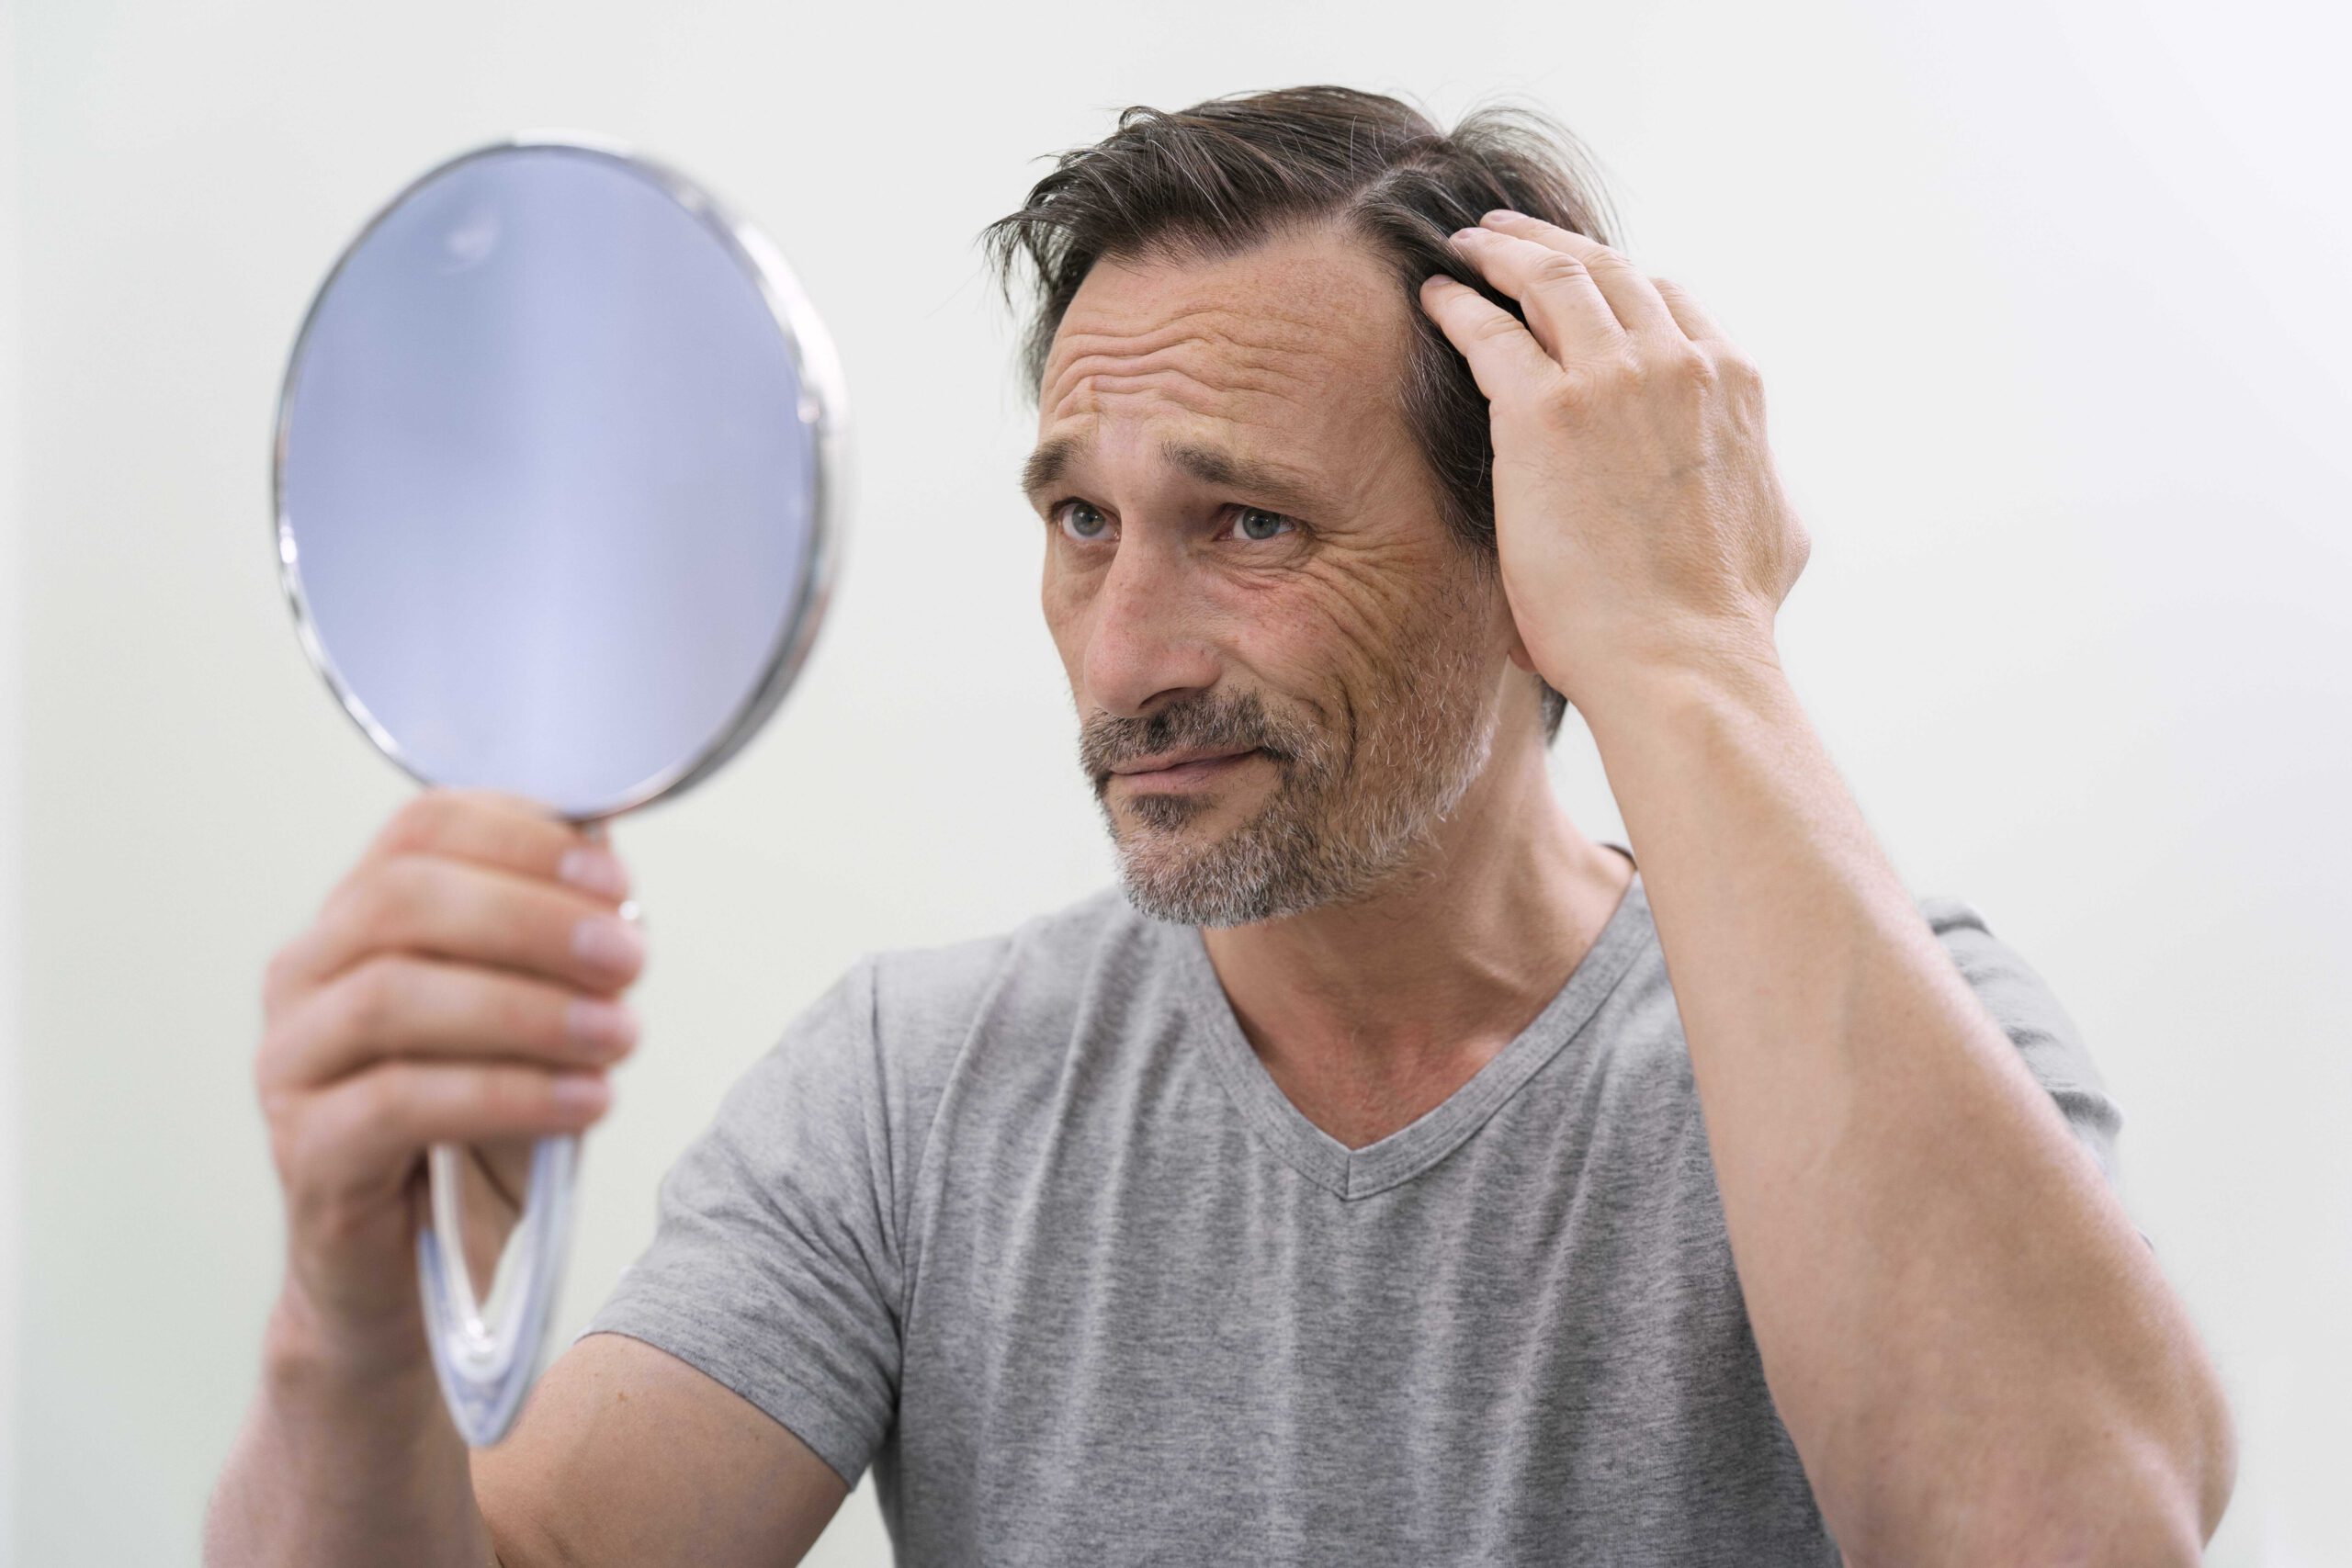 נשירת שיער אצל גברים – למה זה קורה ומה הפתרון?